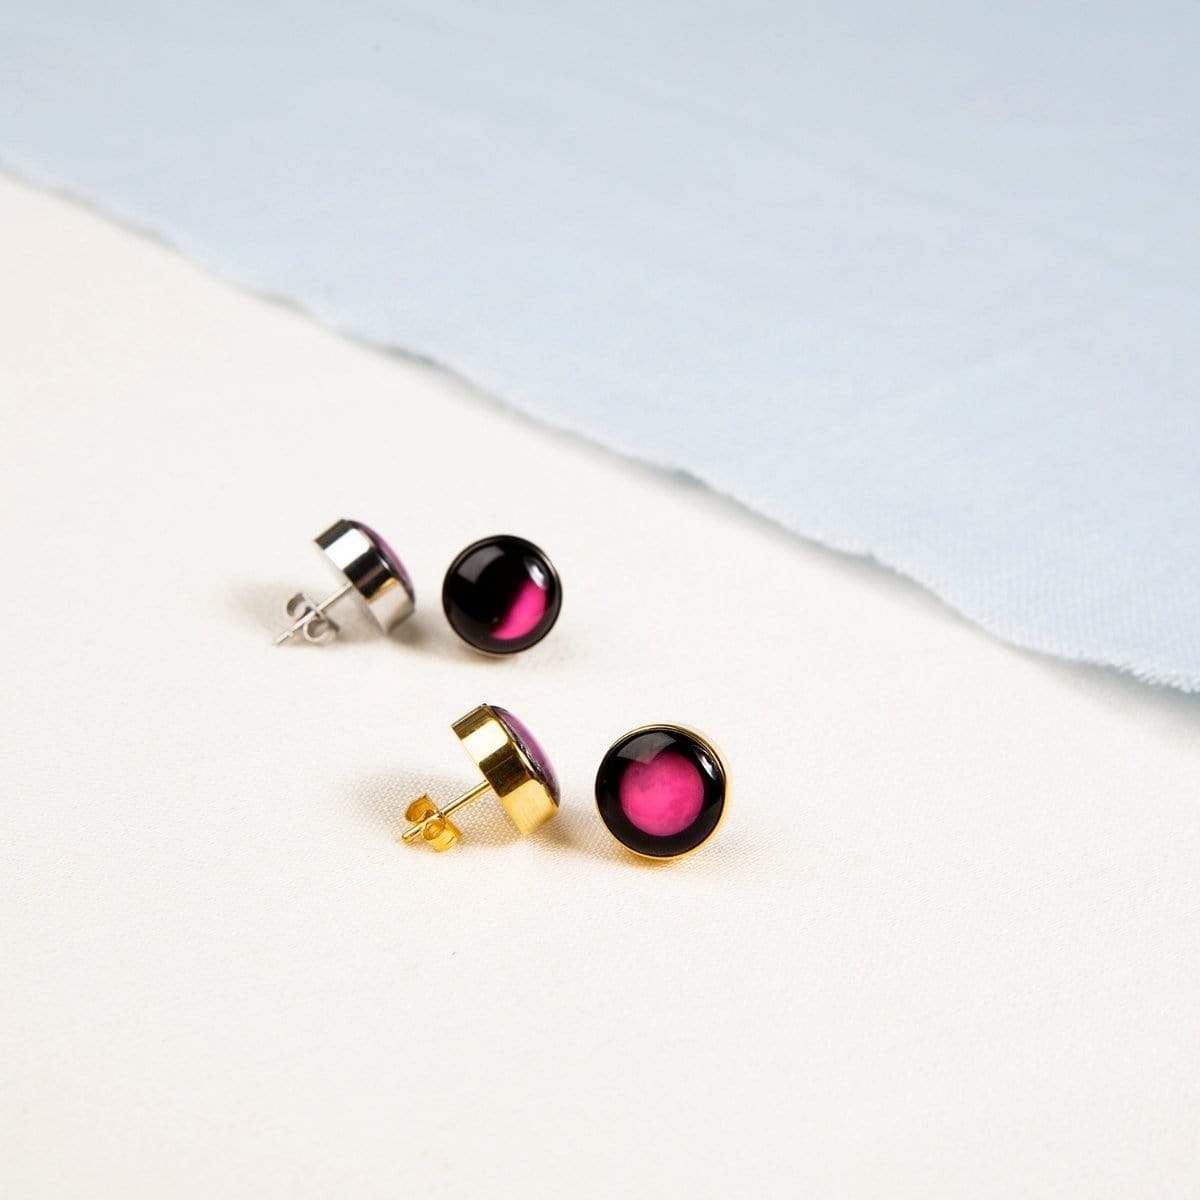 Pink Moon Moonshine Stud Earrings in Stainless Steel